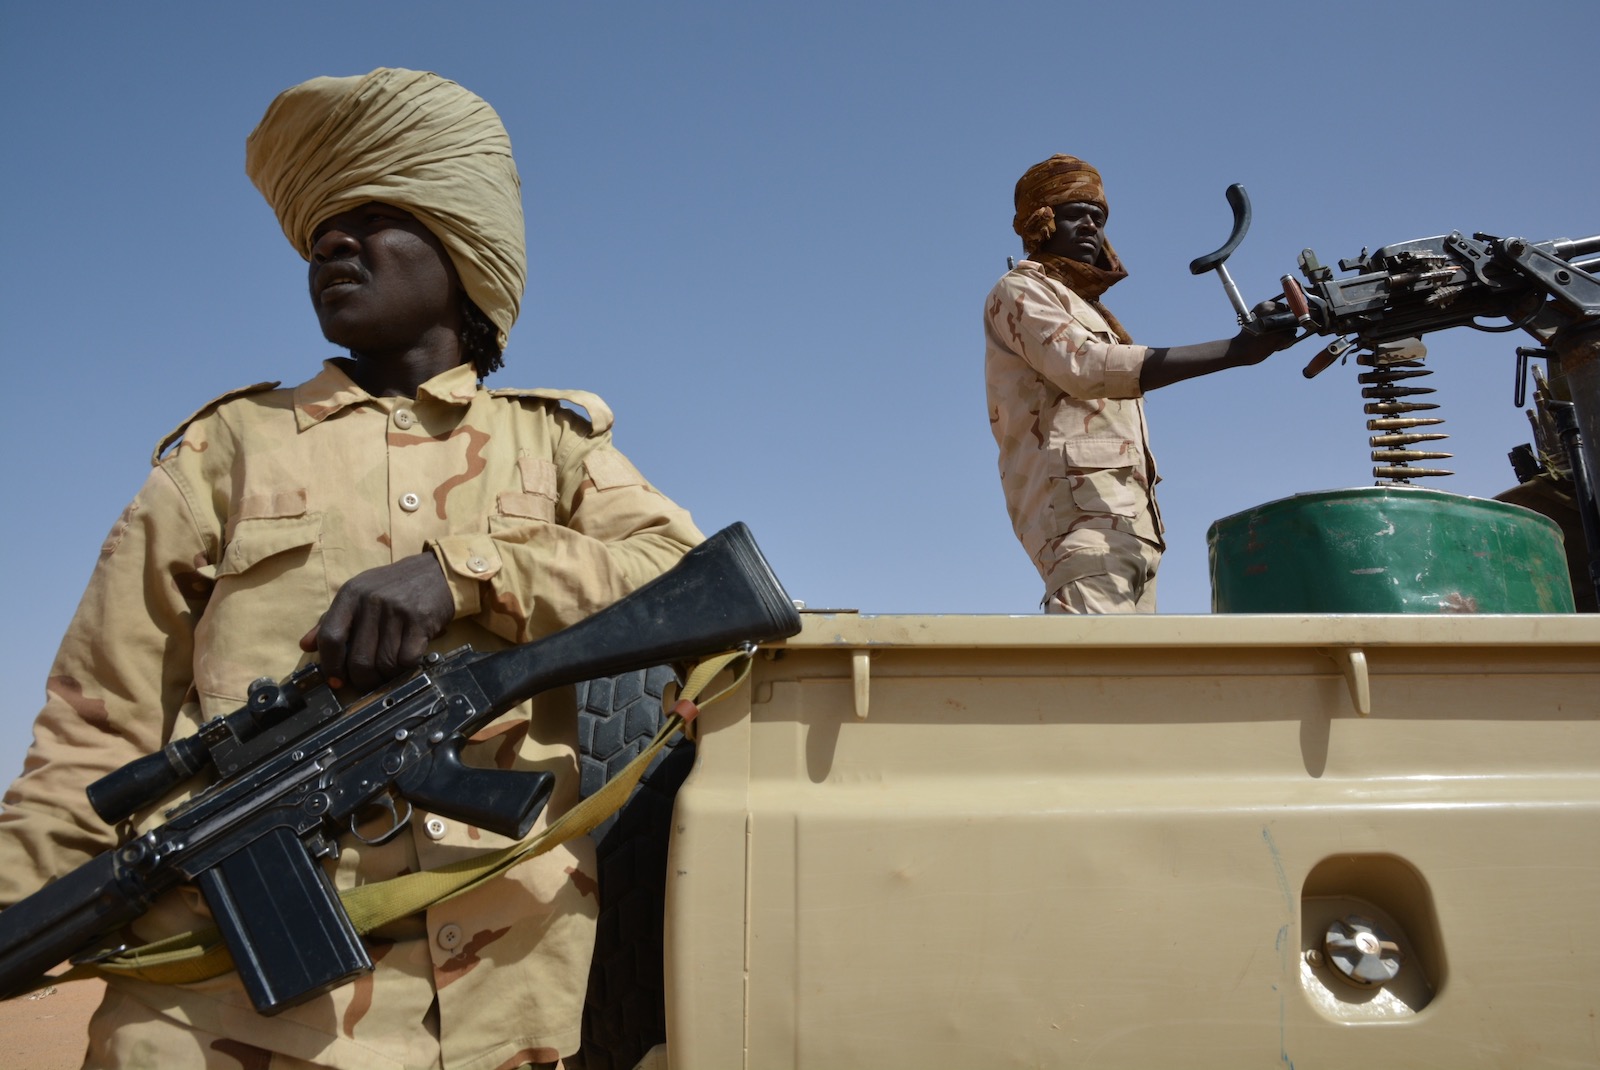 Darfur: The New Massacres